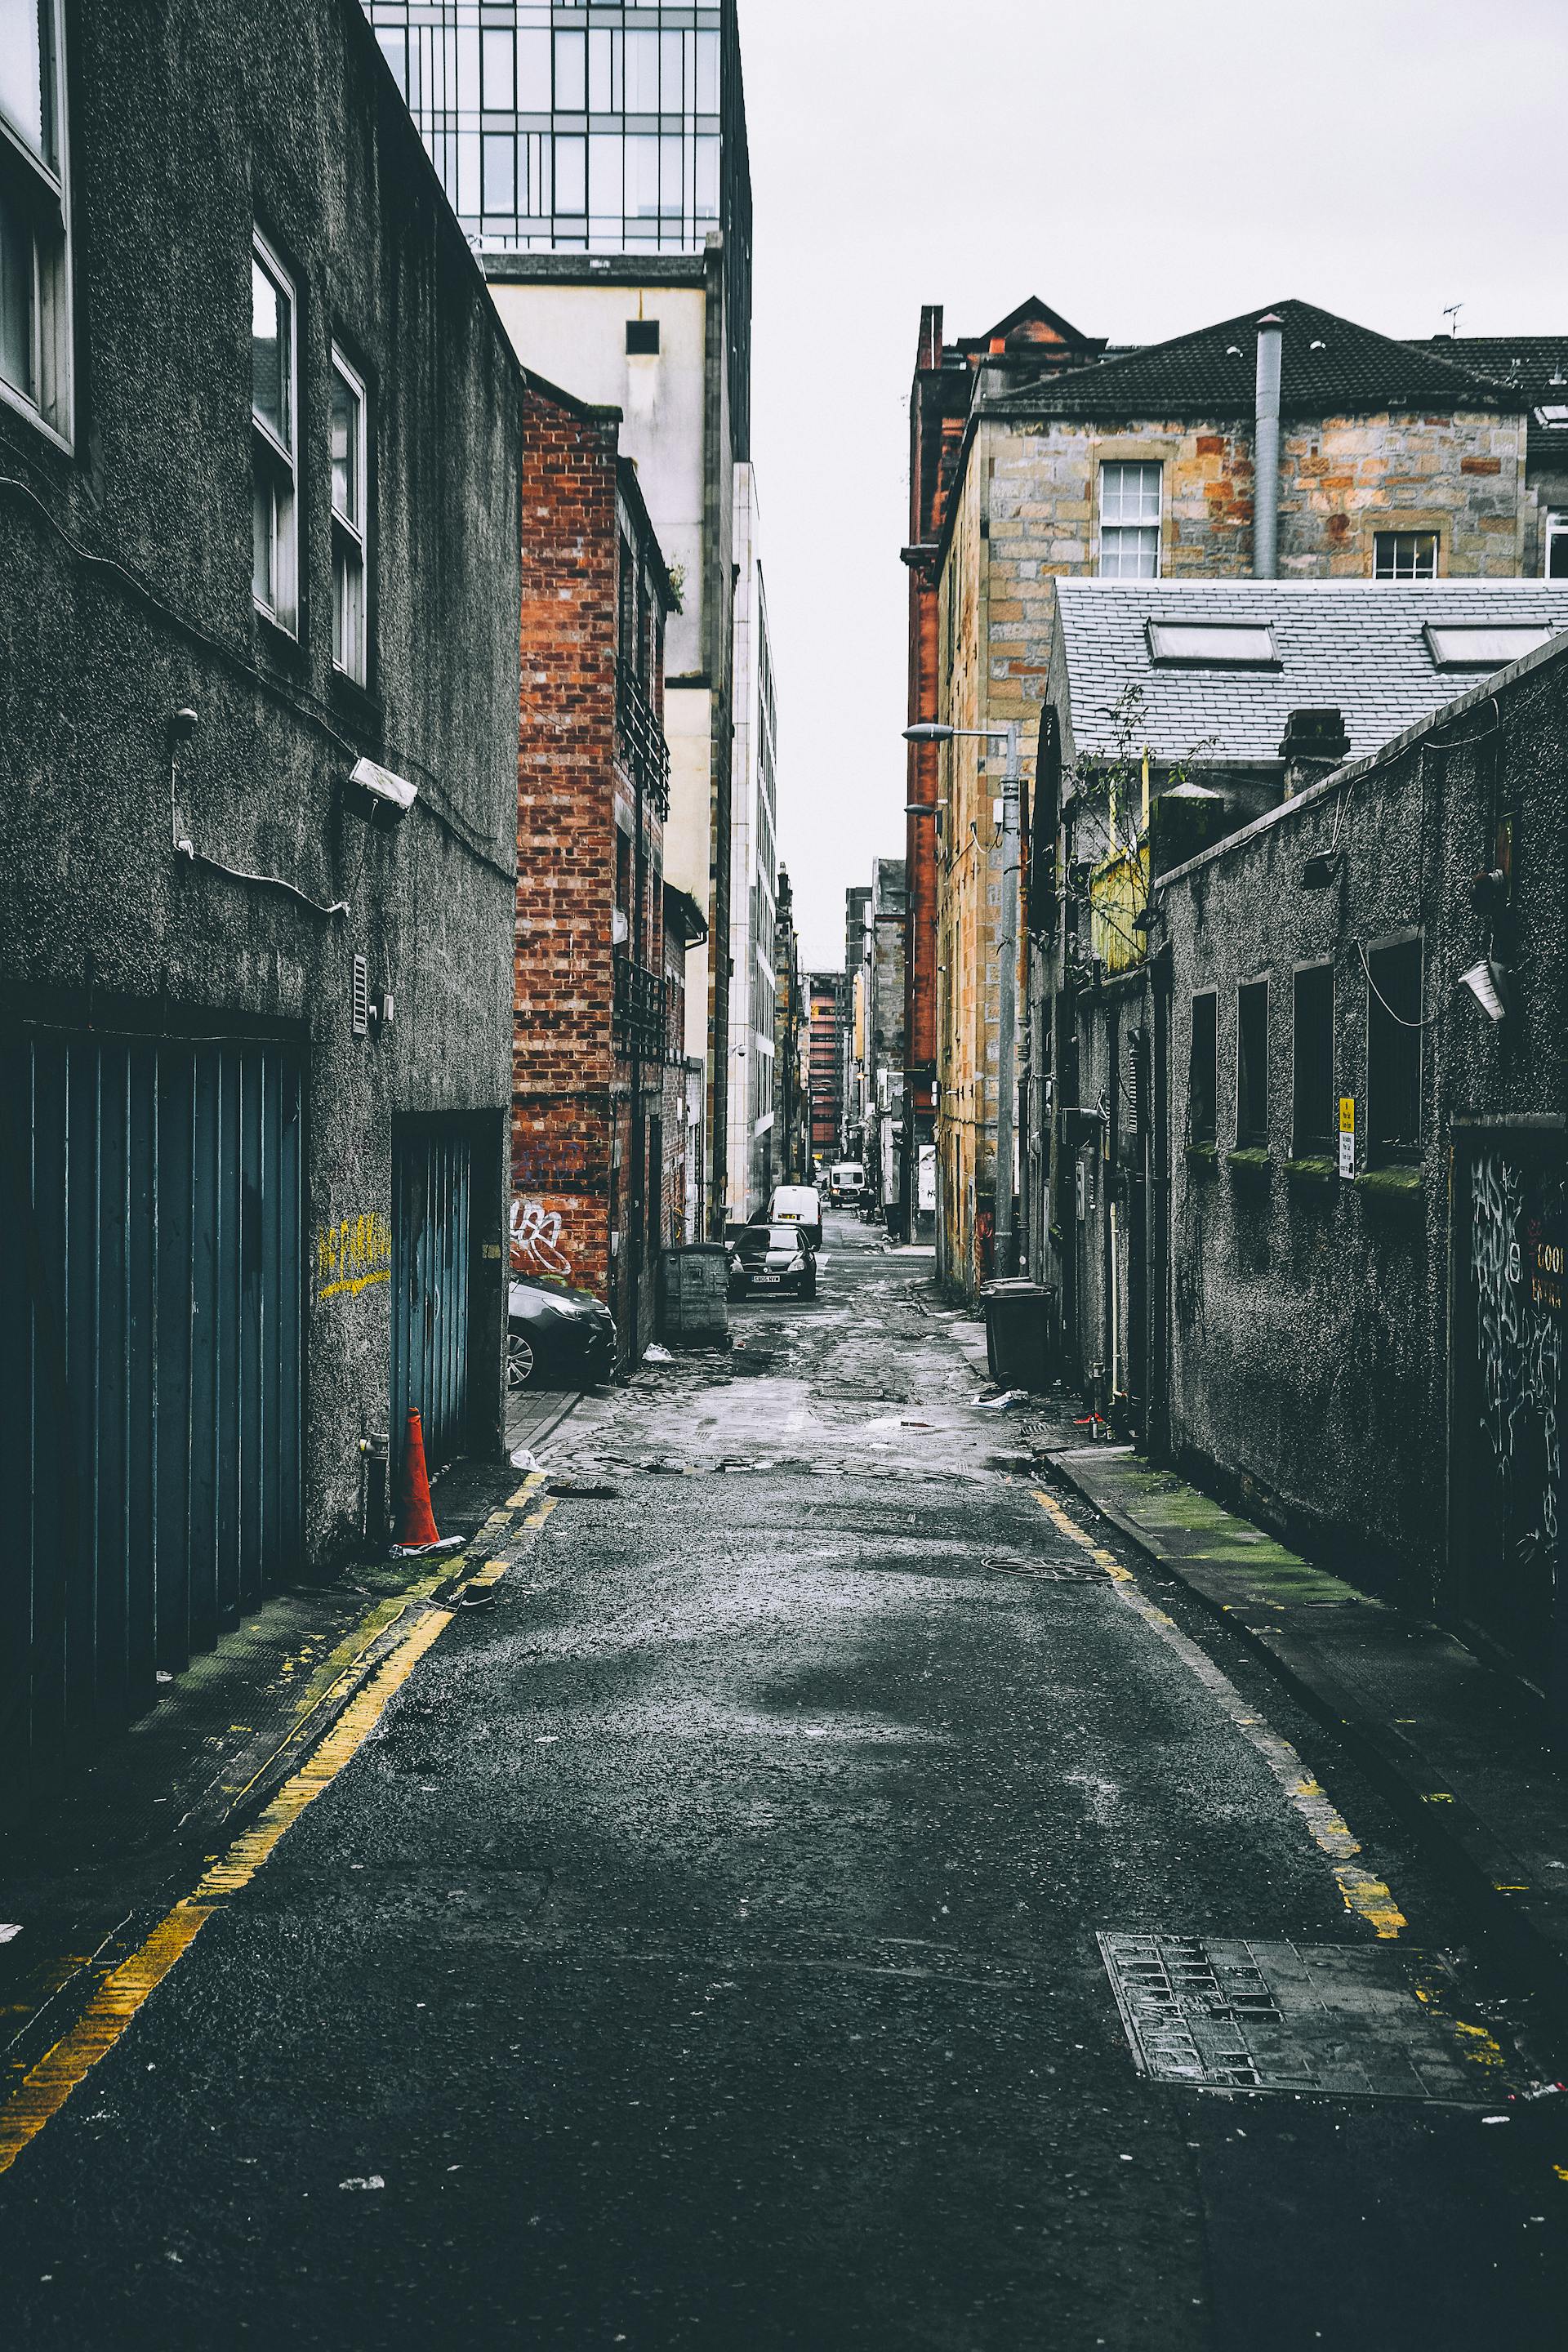 An alley in between buildings | Source: Pexels